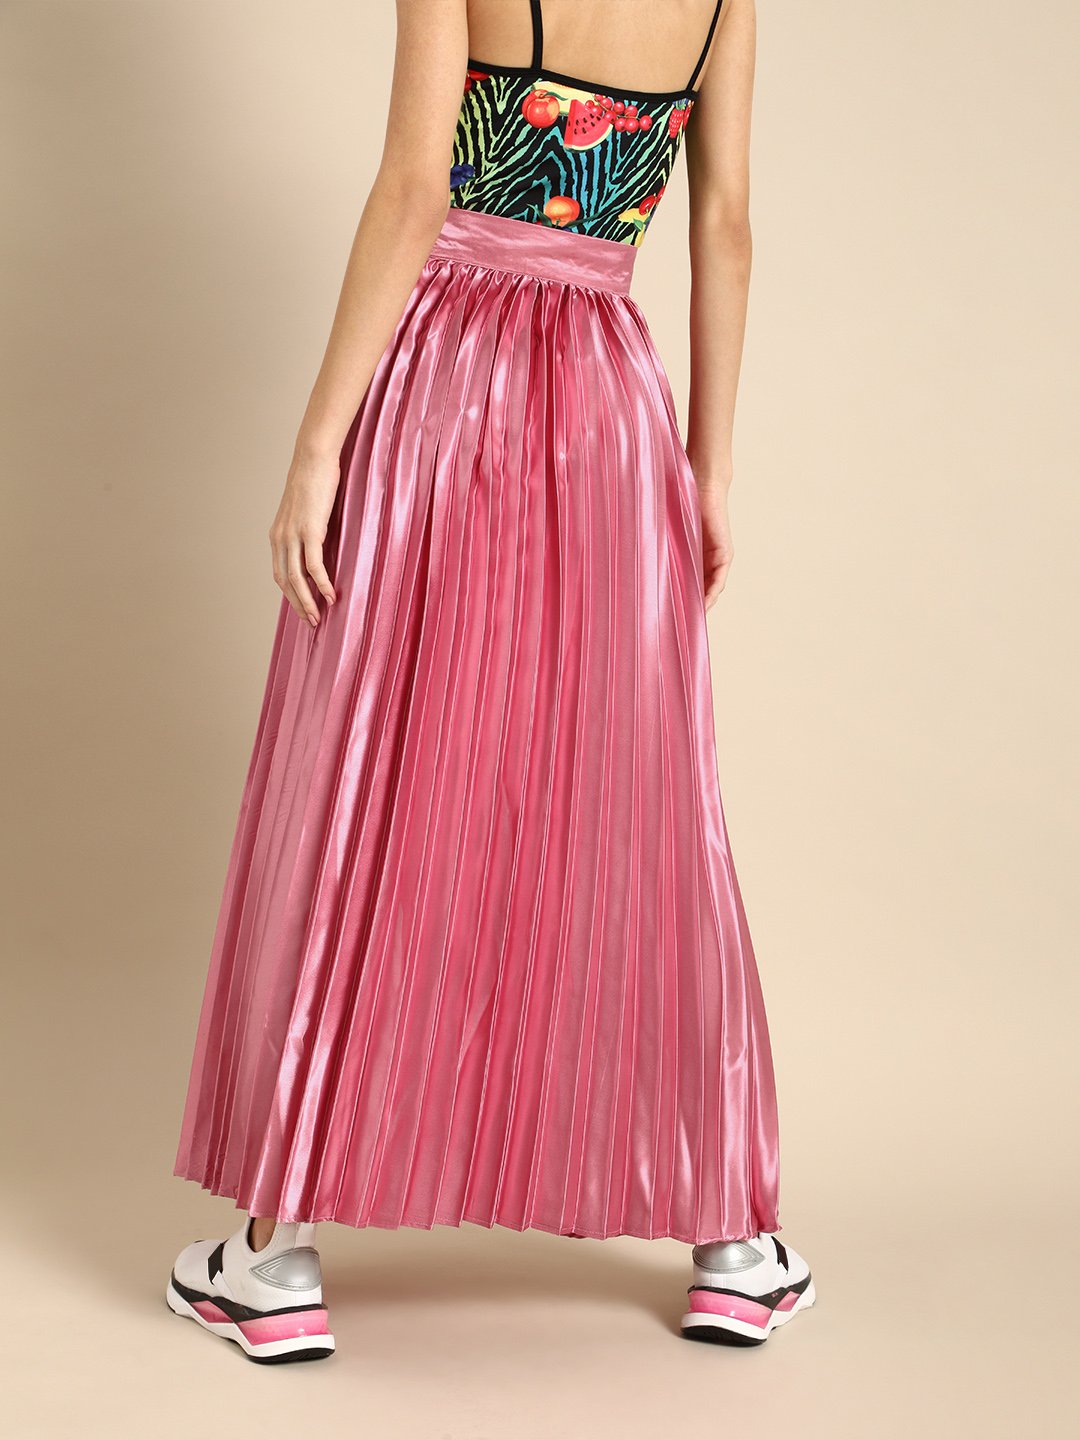 SCORPIUS Dark Pink Pleated satin Skirt